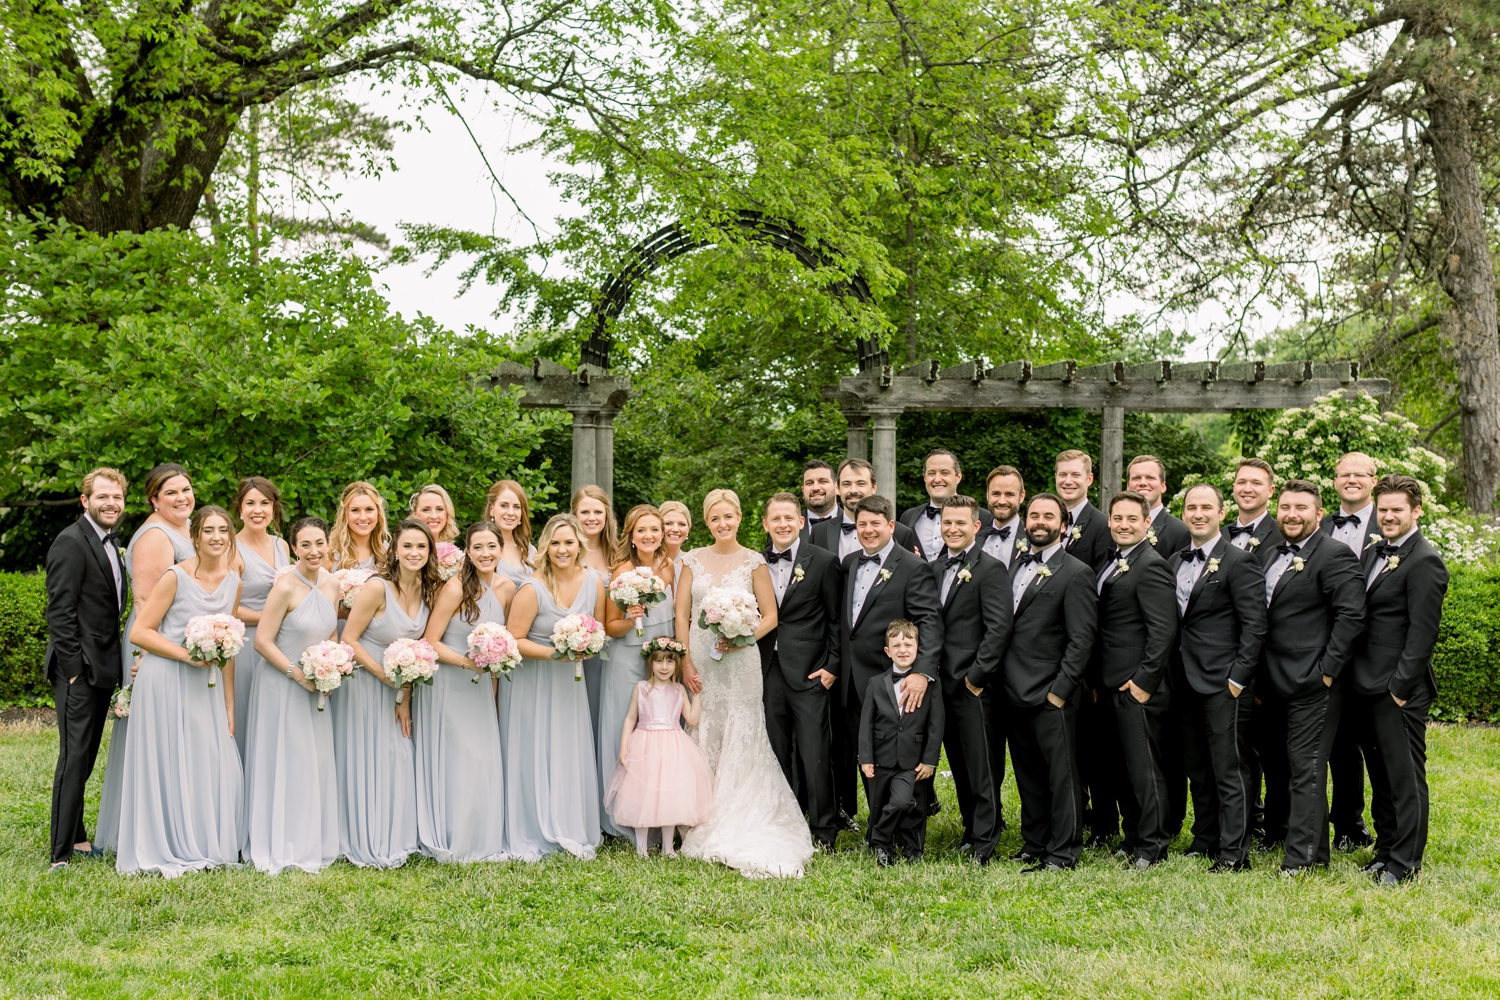 Big Bridal Party in Rose Garden at Ault Park Cincinnati Wedding